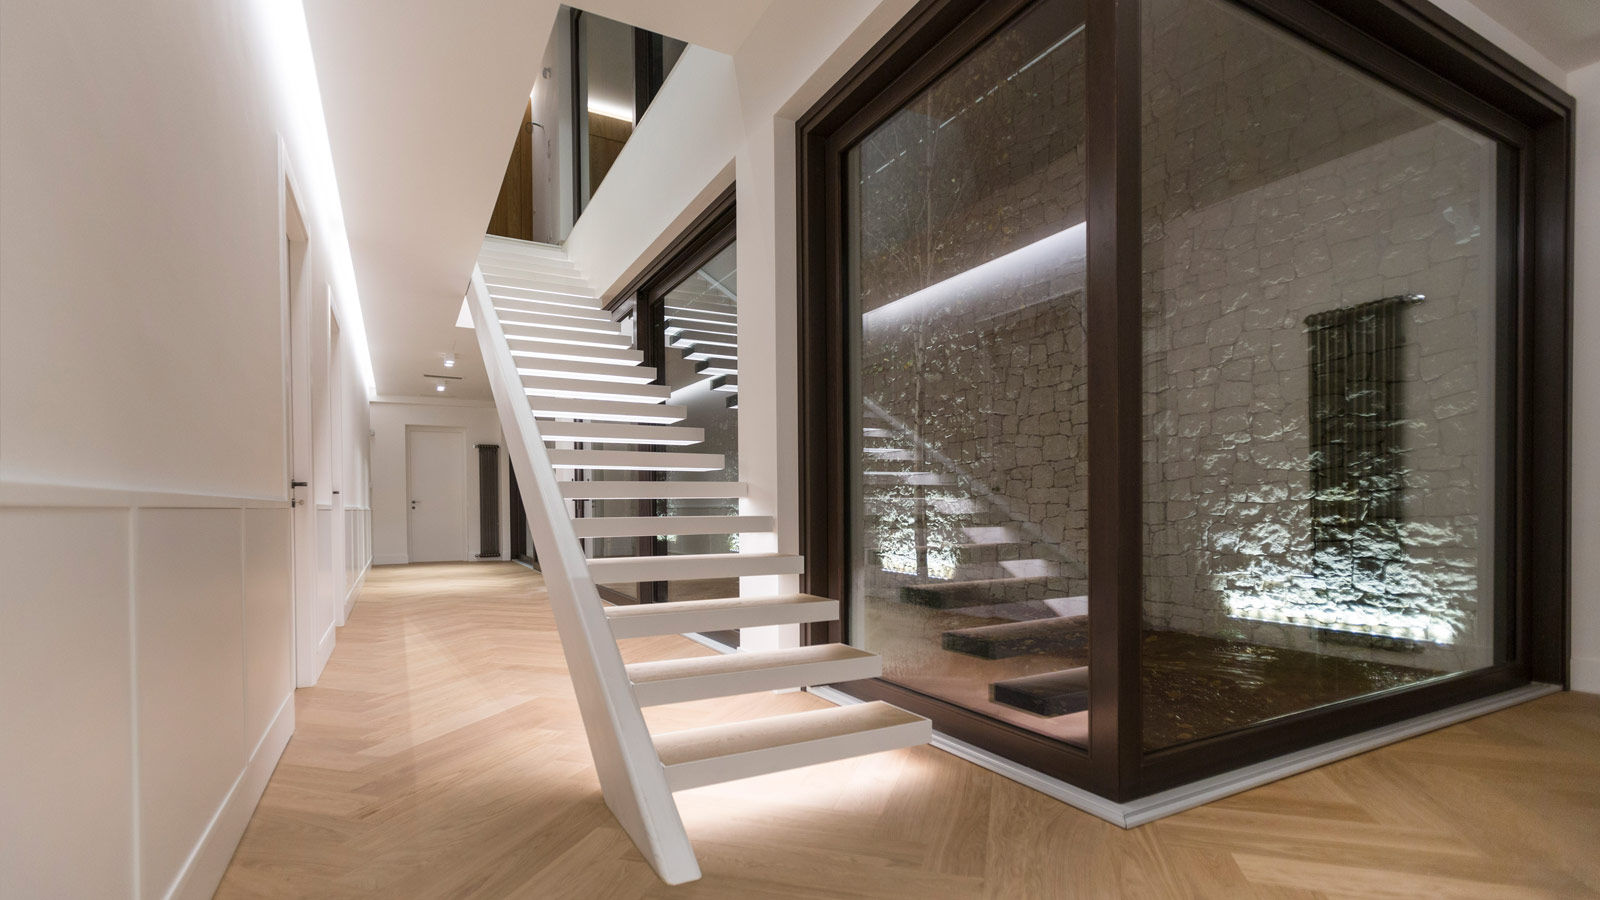 Villa Ferroli | Stairway GD Arredamenti Stairs Engineered Wood Transparent GD Arredamenti,GeD Cucine,GD Cucine,staircase,stairway,ladder,white house,glass facade,marble flooring